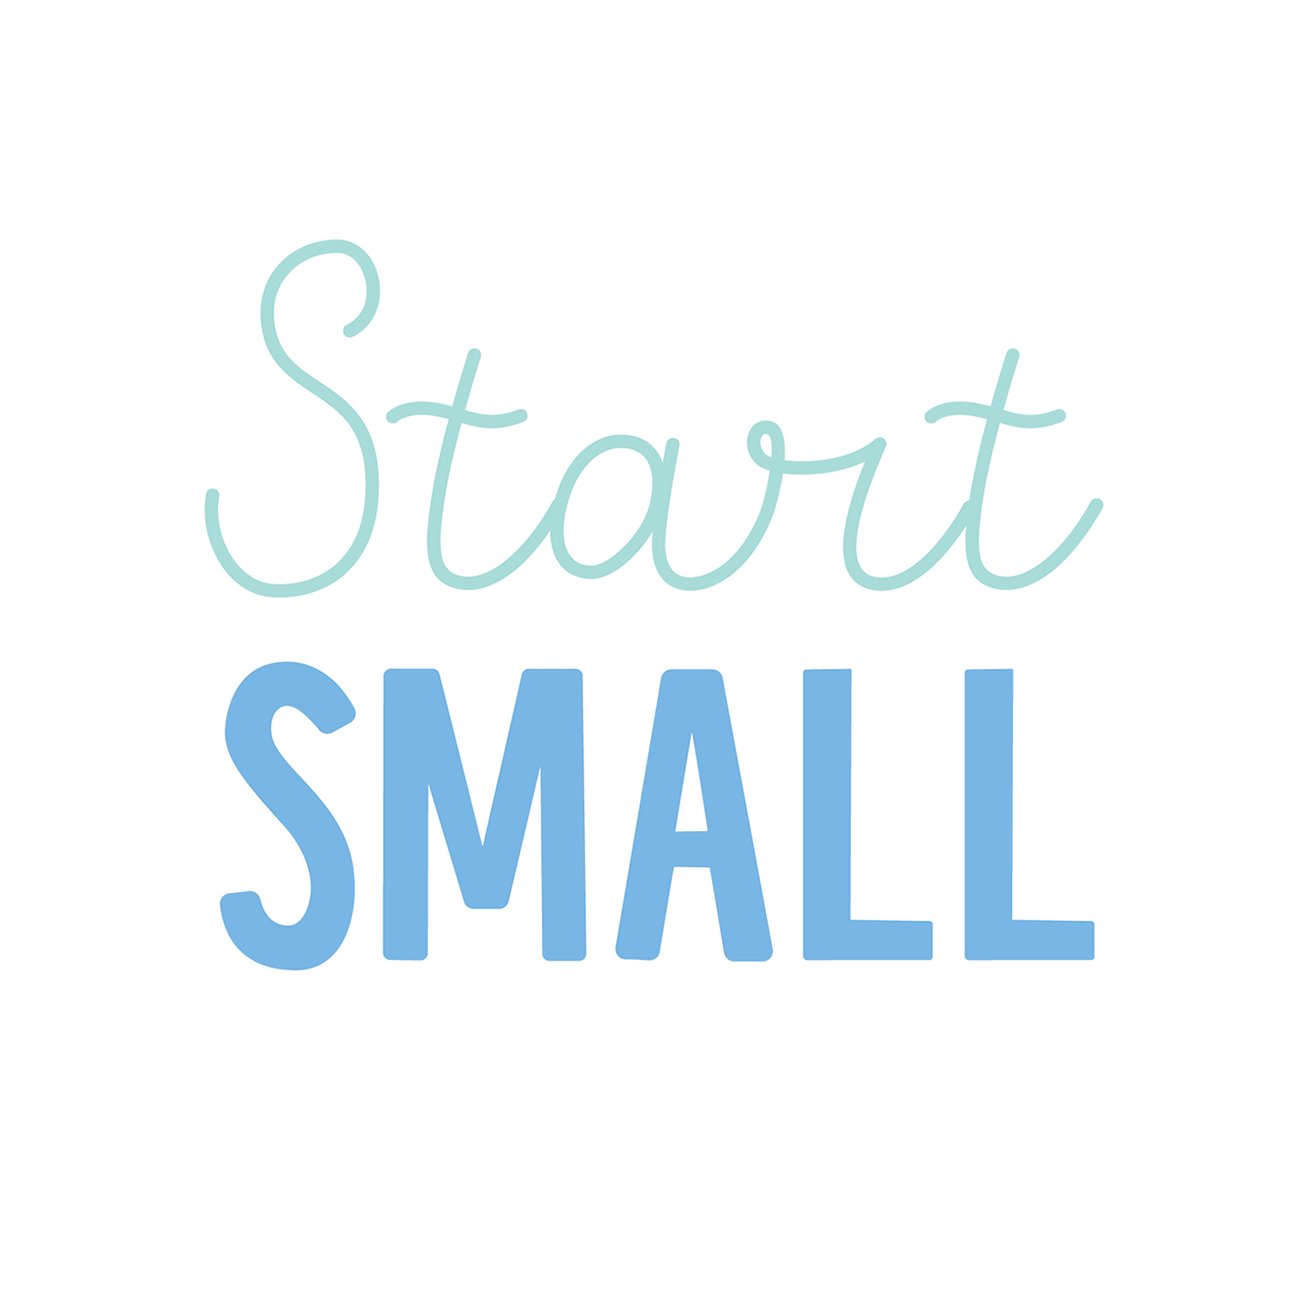 Start Small, Part 3: Small Talk